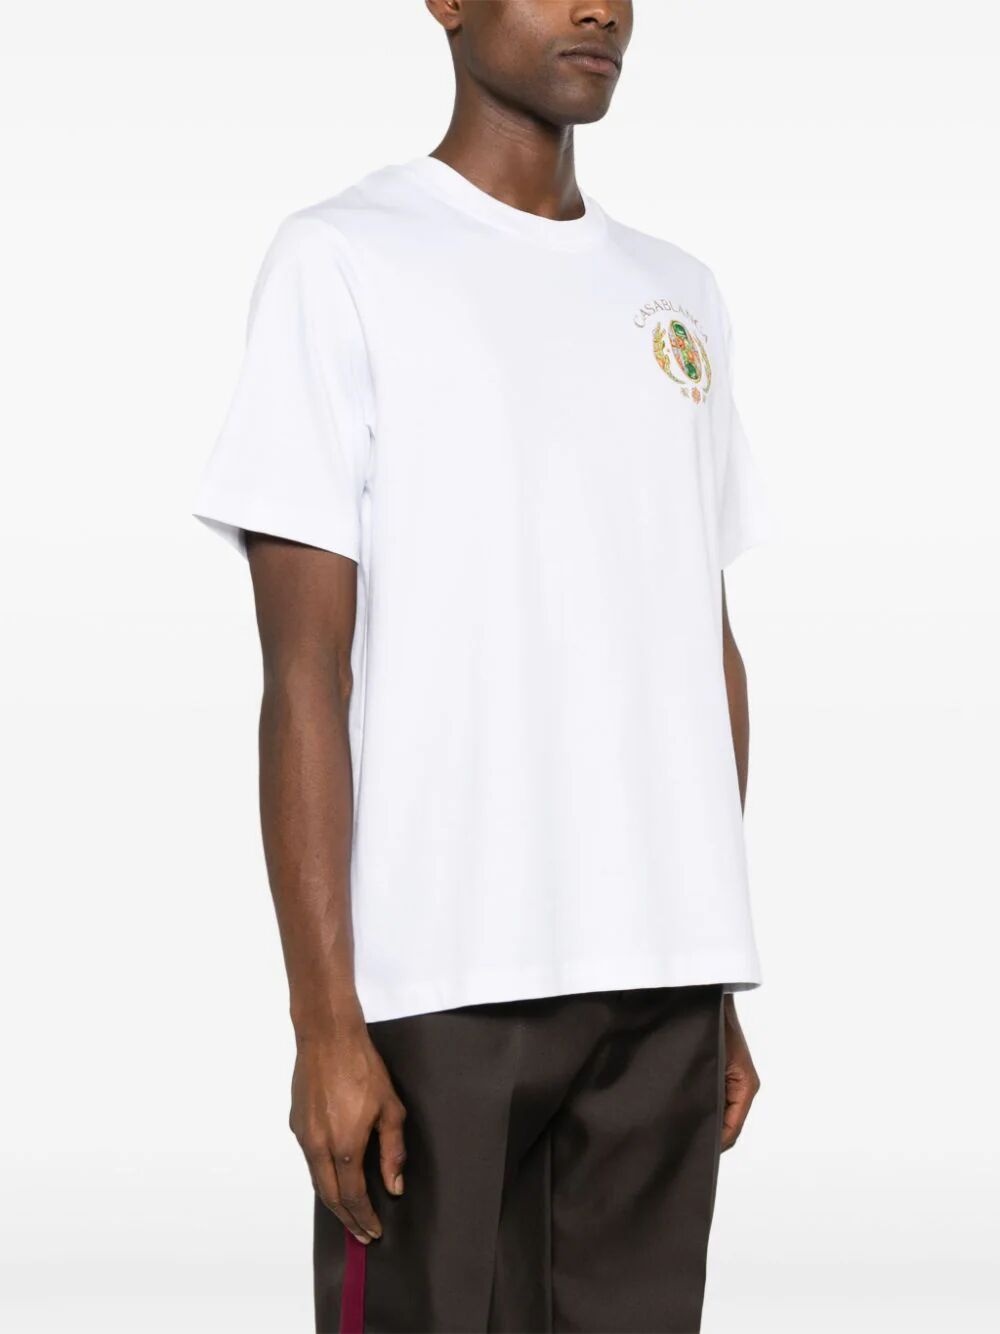 Joyaux d'afrique tennis club t-shirt - 4